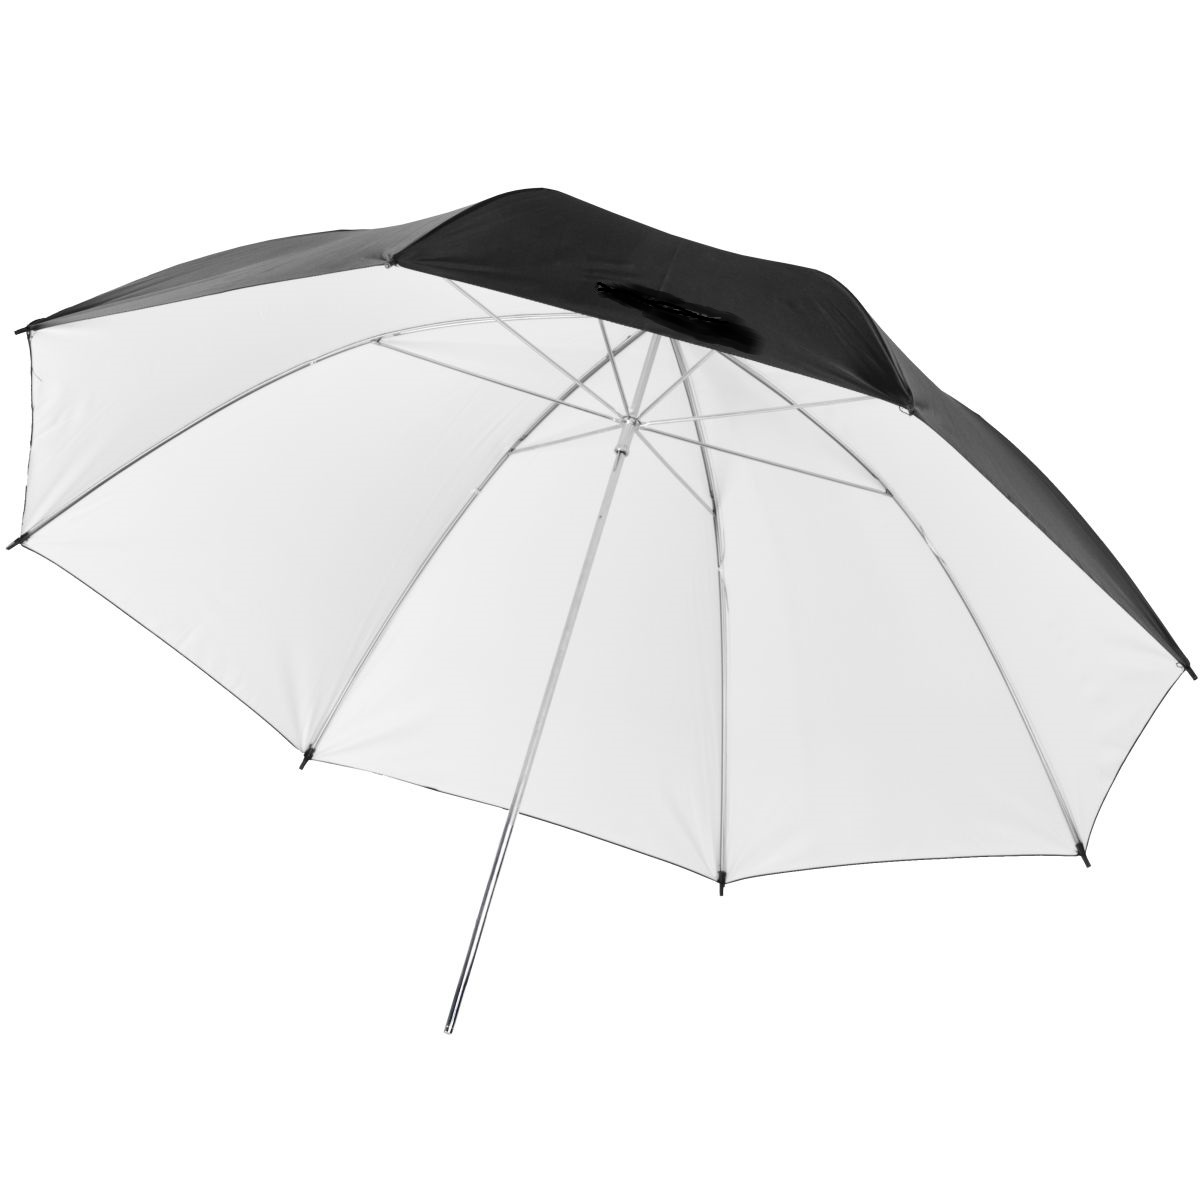 Studiový fotografický odrazový bílý deštník, 102 cm 